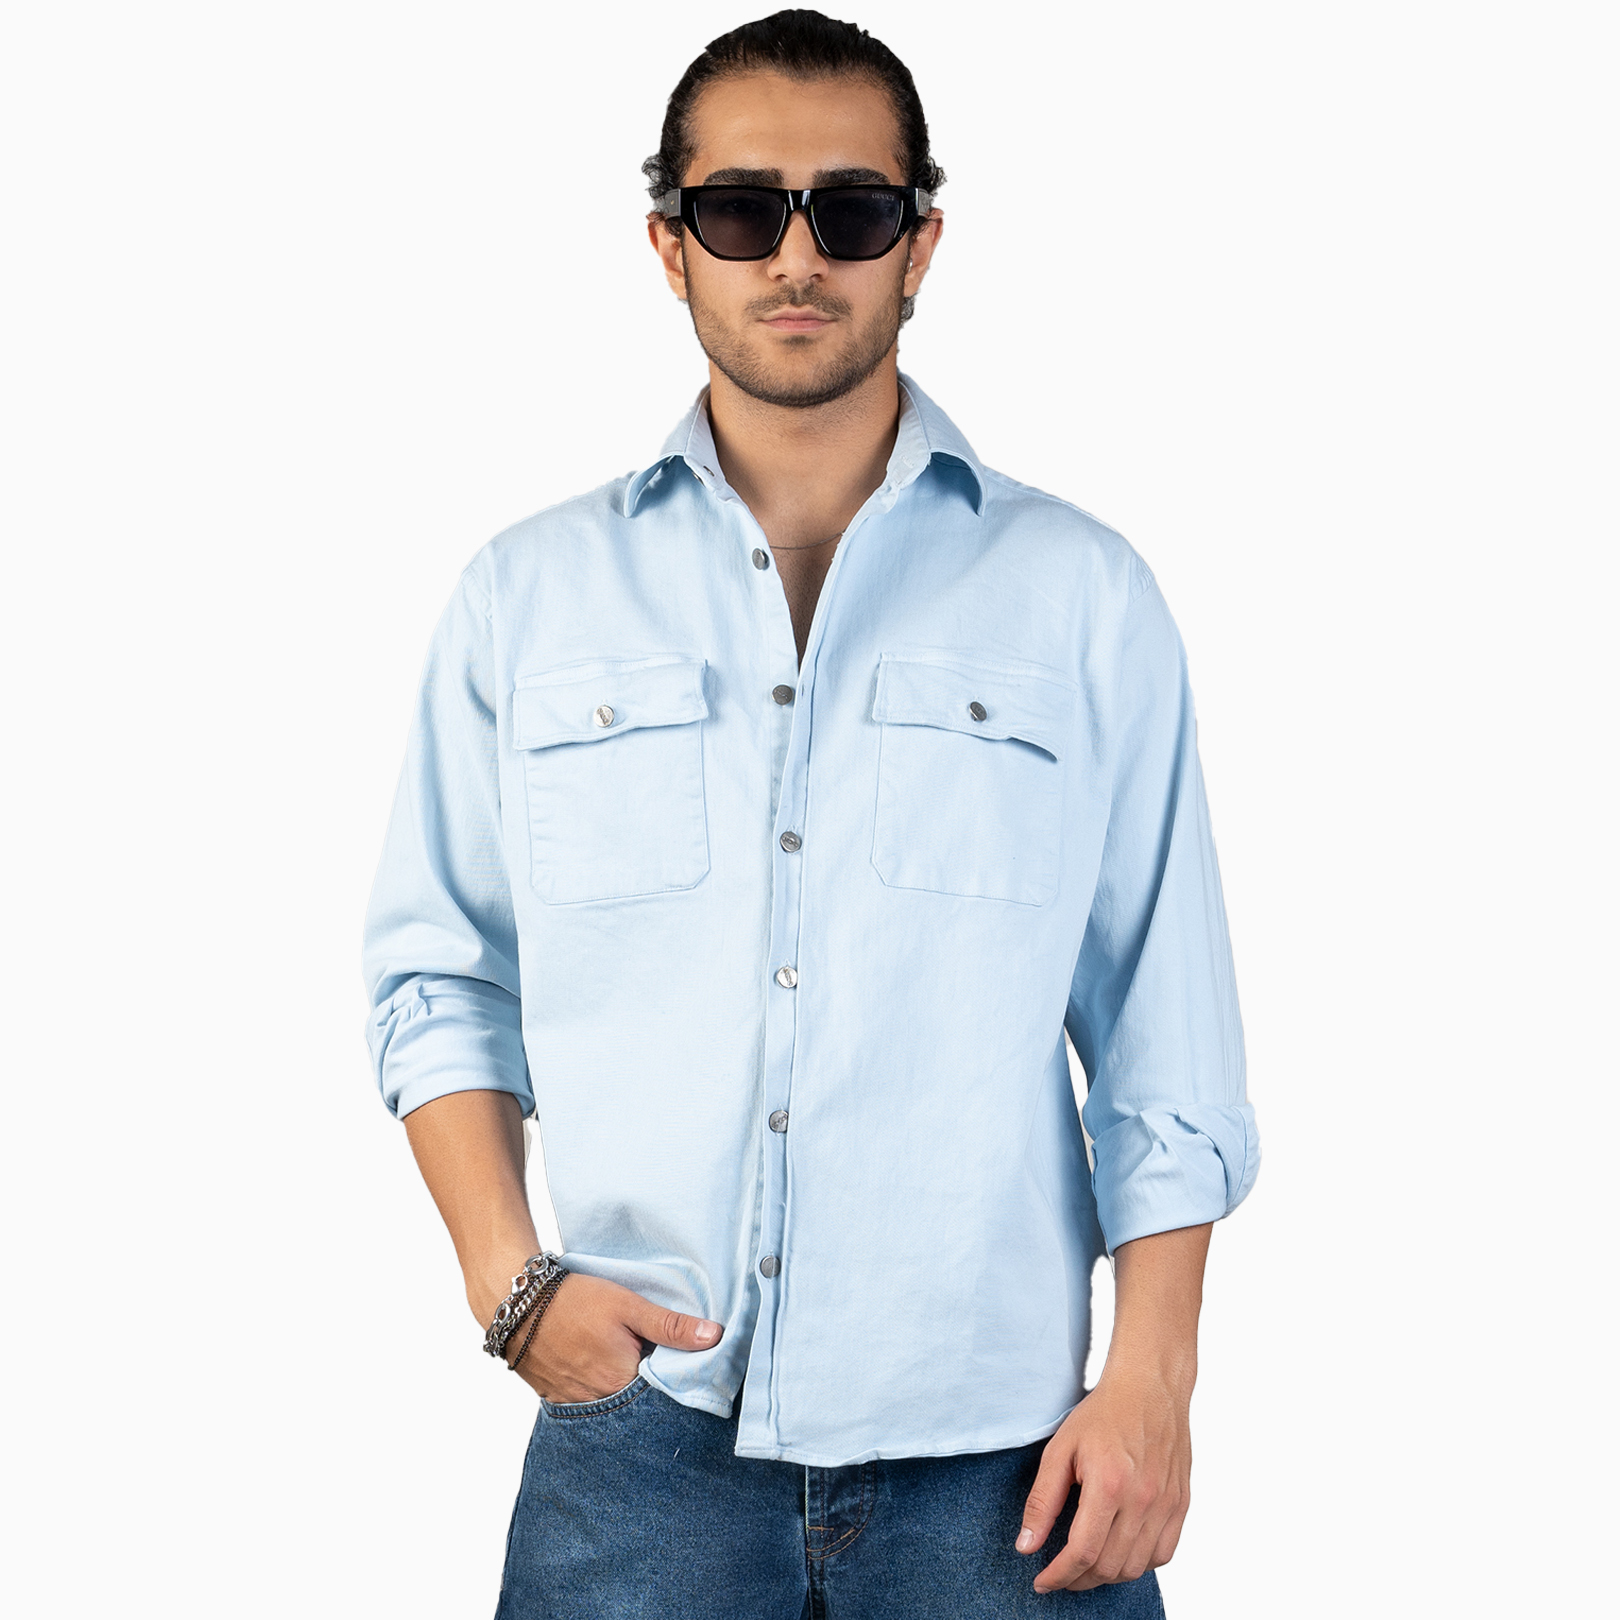 نکته خرید - قیمت روز پیراهن آستین بلند مردانه ان سی نو مدل جردن رنگ آبی آسمانی خرید